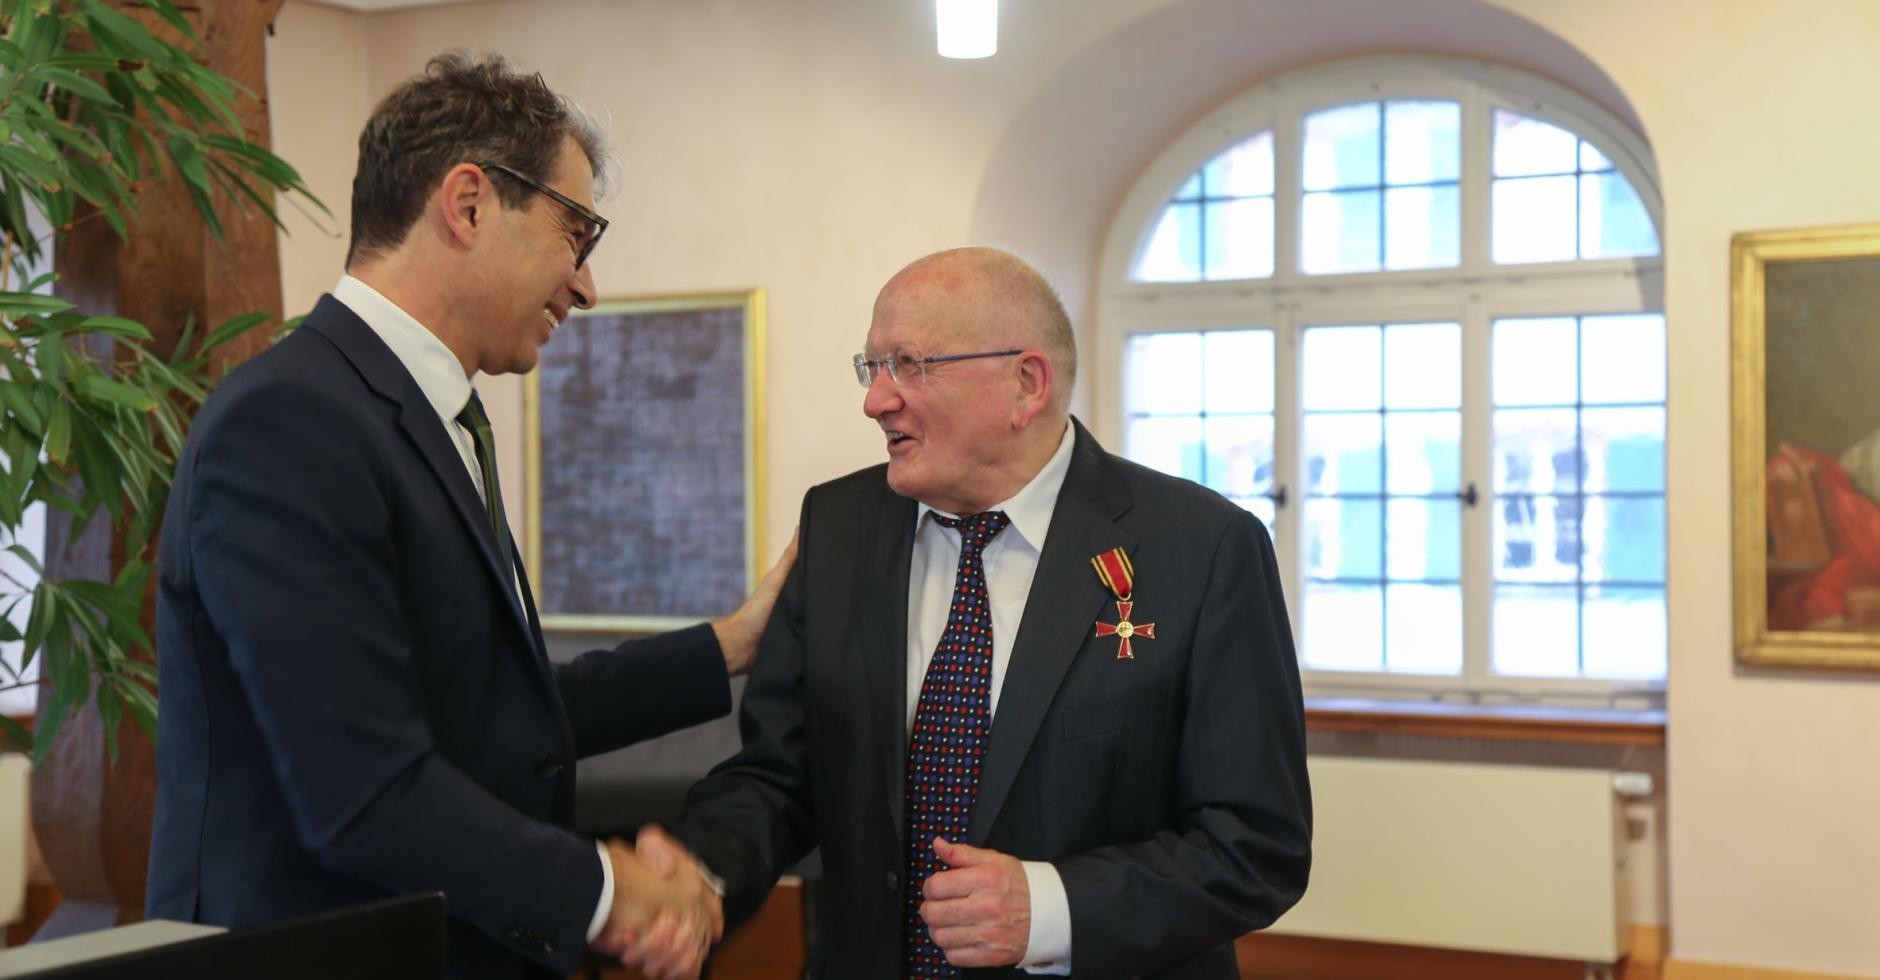 Staatssekretär Dr. Andre Baumann gratuliert Edmund Hensle zum Bundesverdienstkreuz